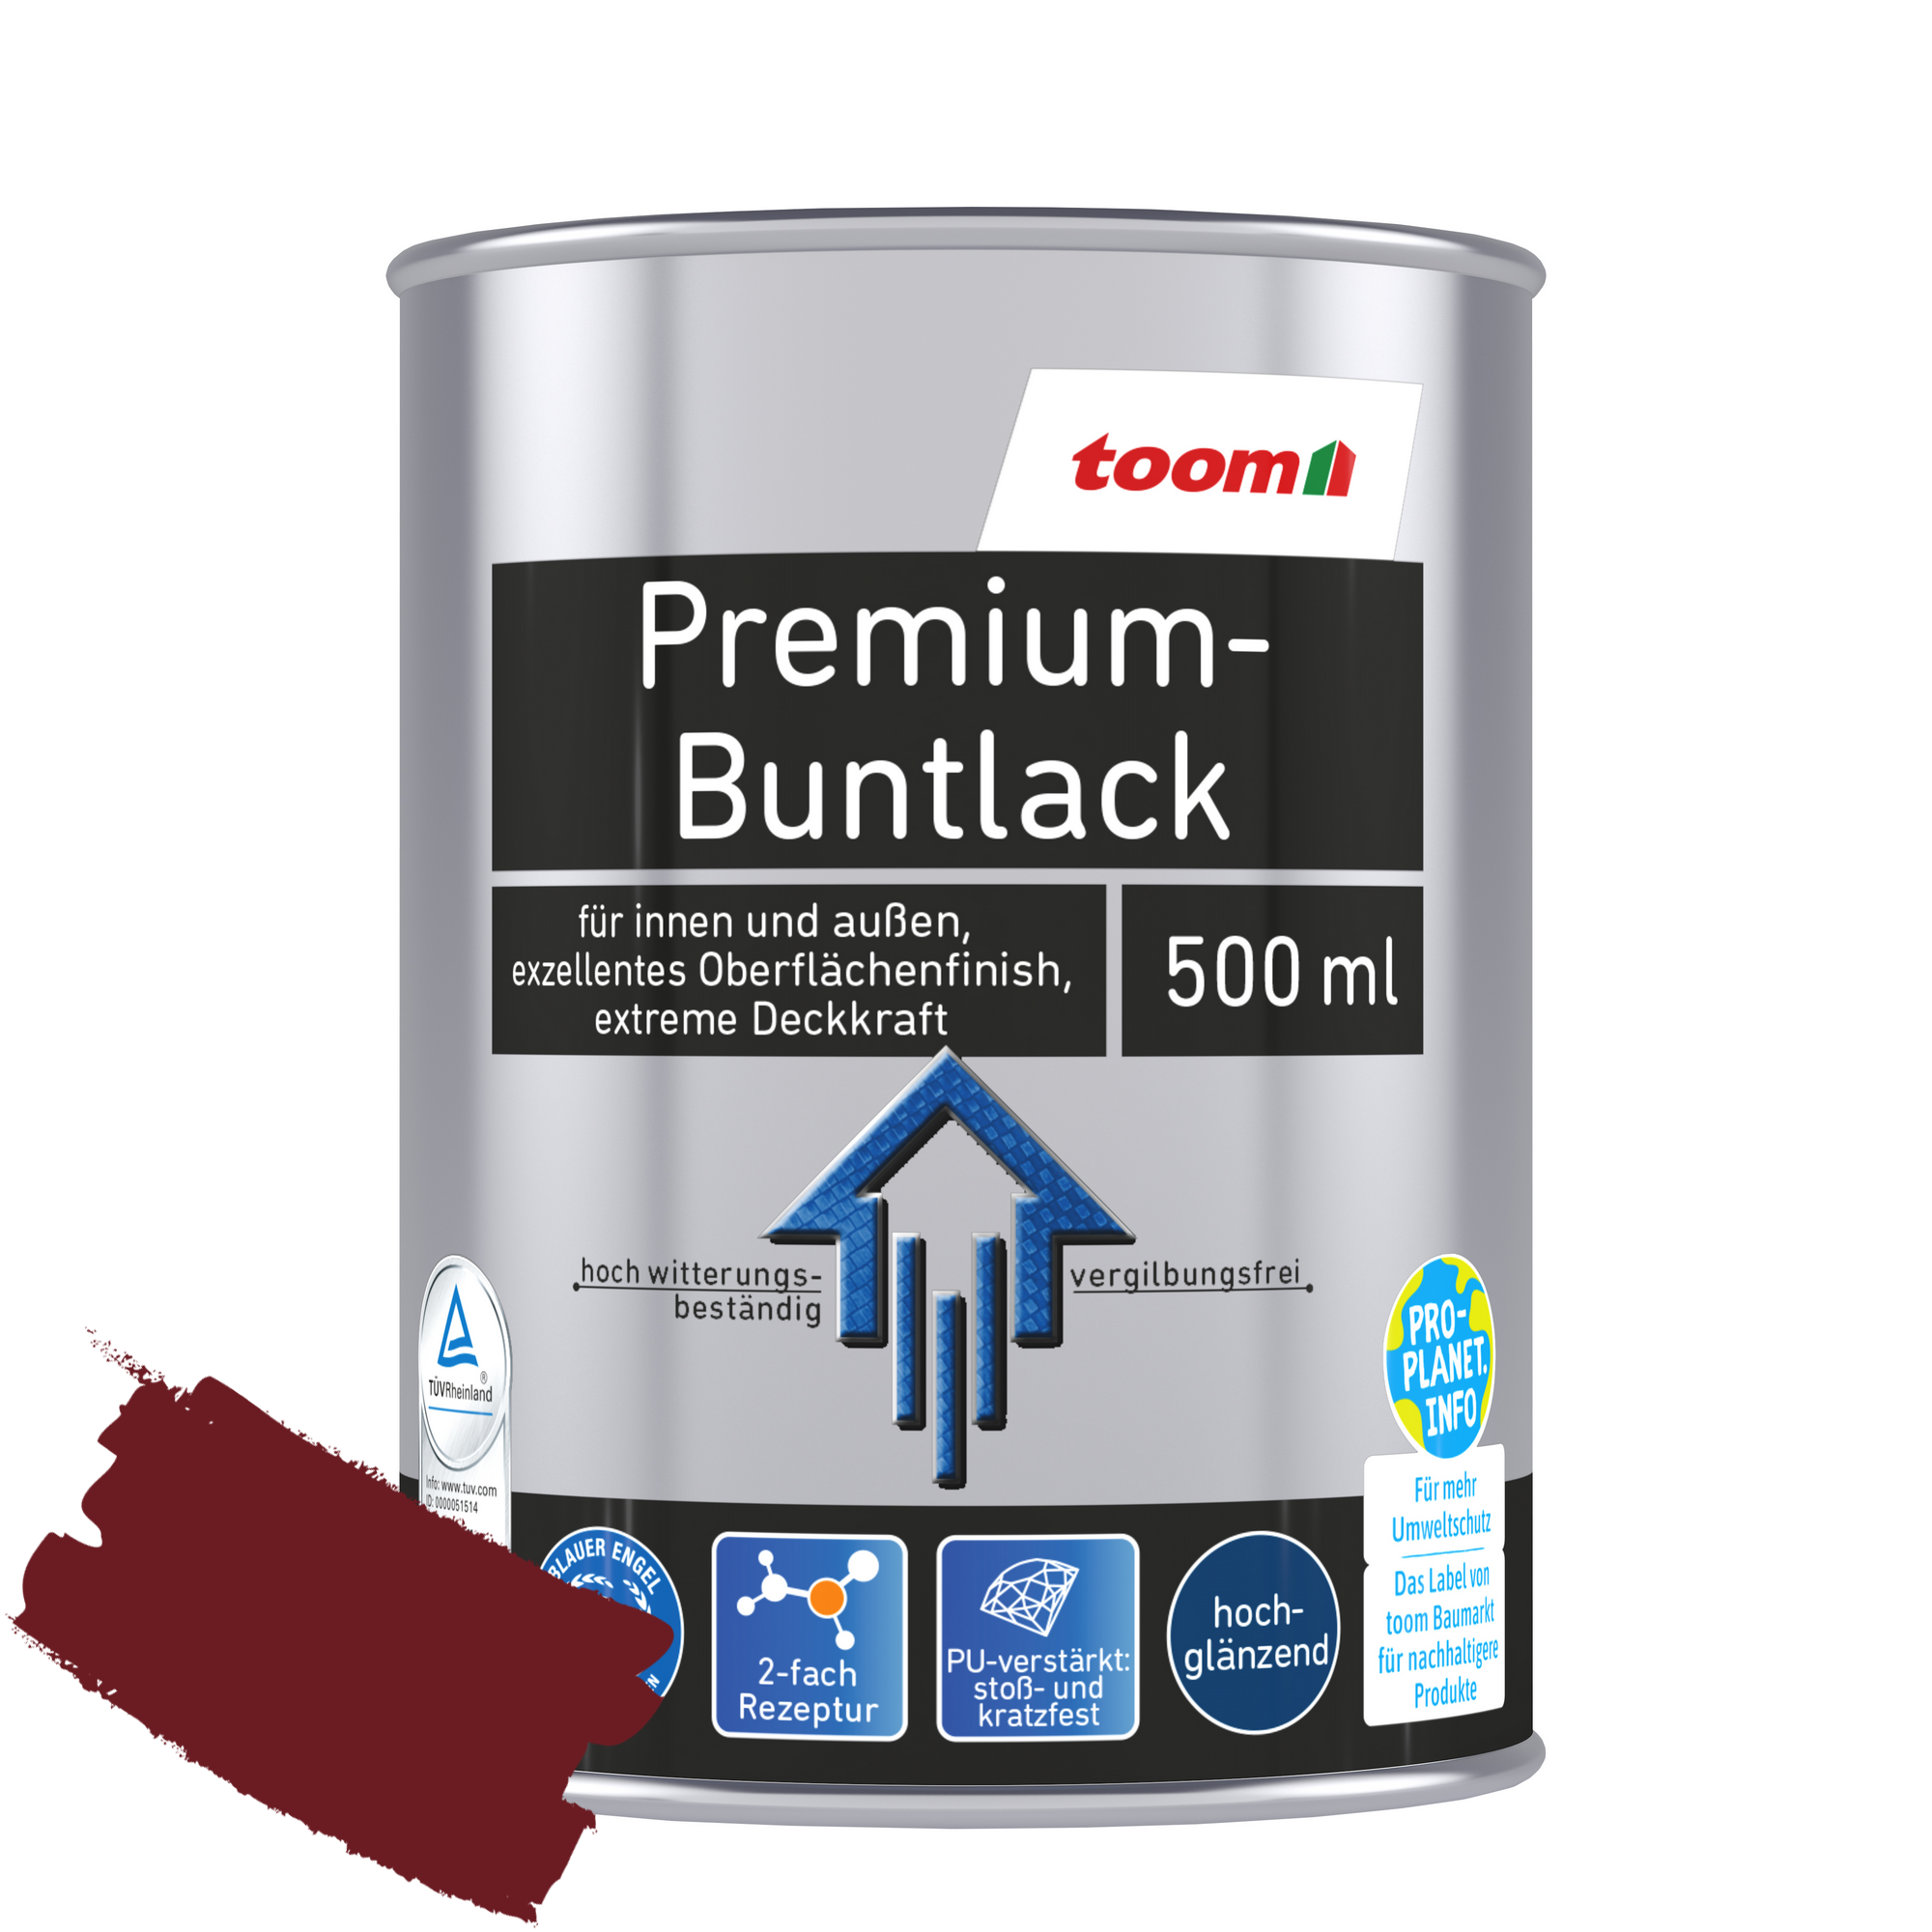 Premium-Buntlack purpurrot glänzend 500 ml + product picture